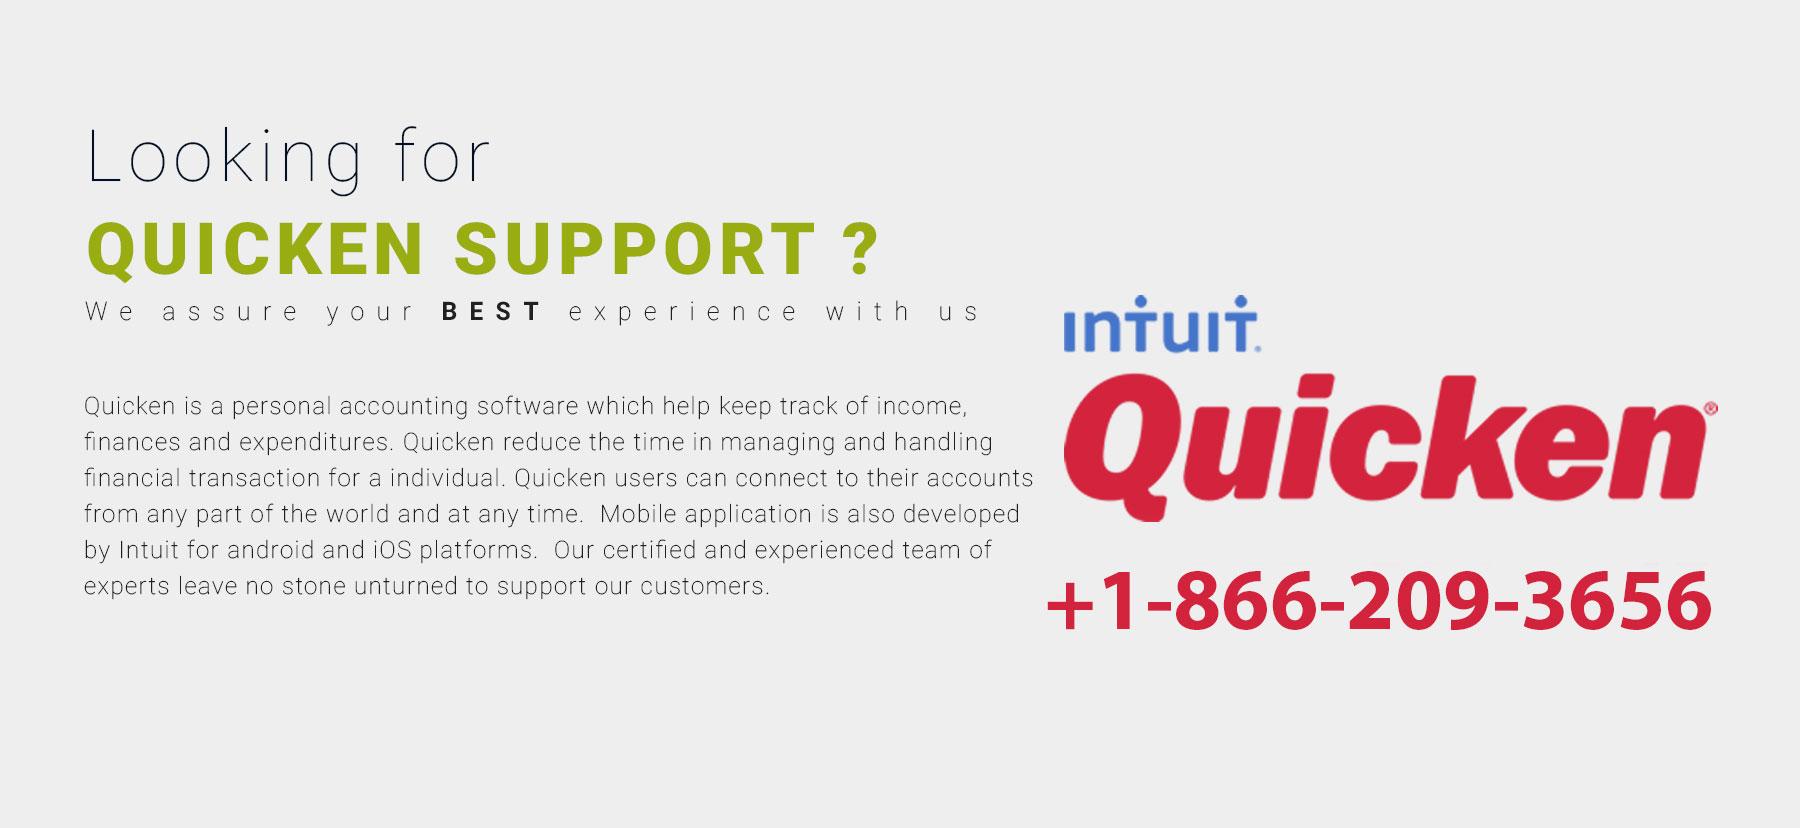 Intuit Quicken Logo - Intuit Quciken Support Quicken Support